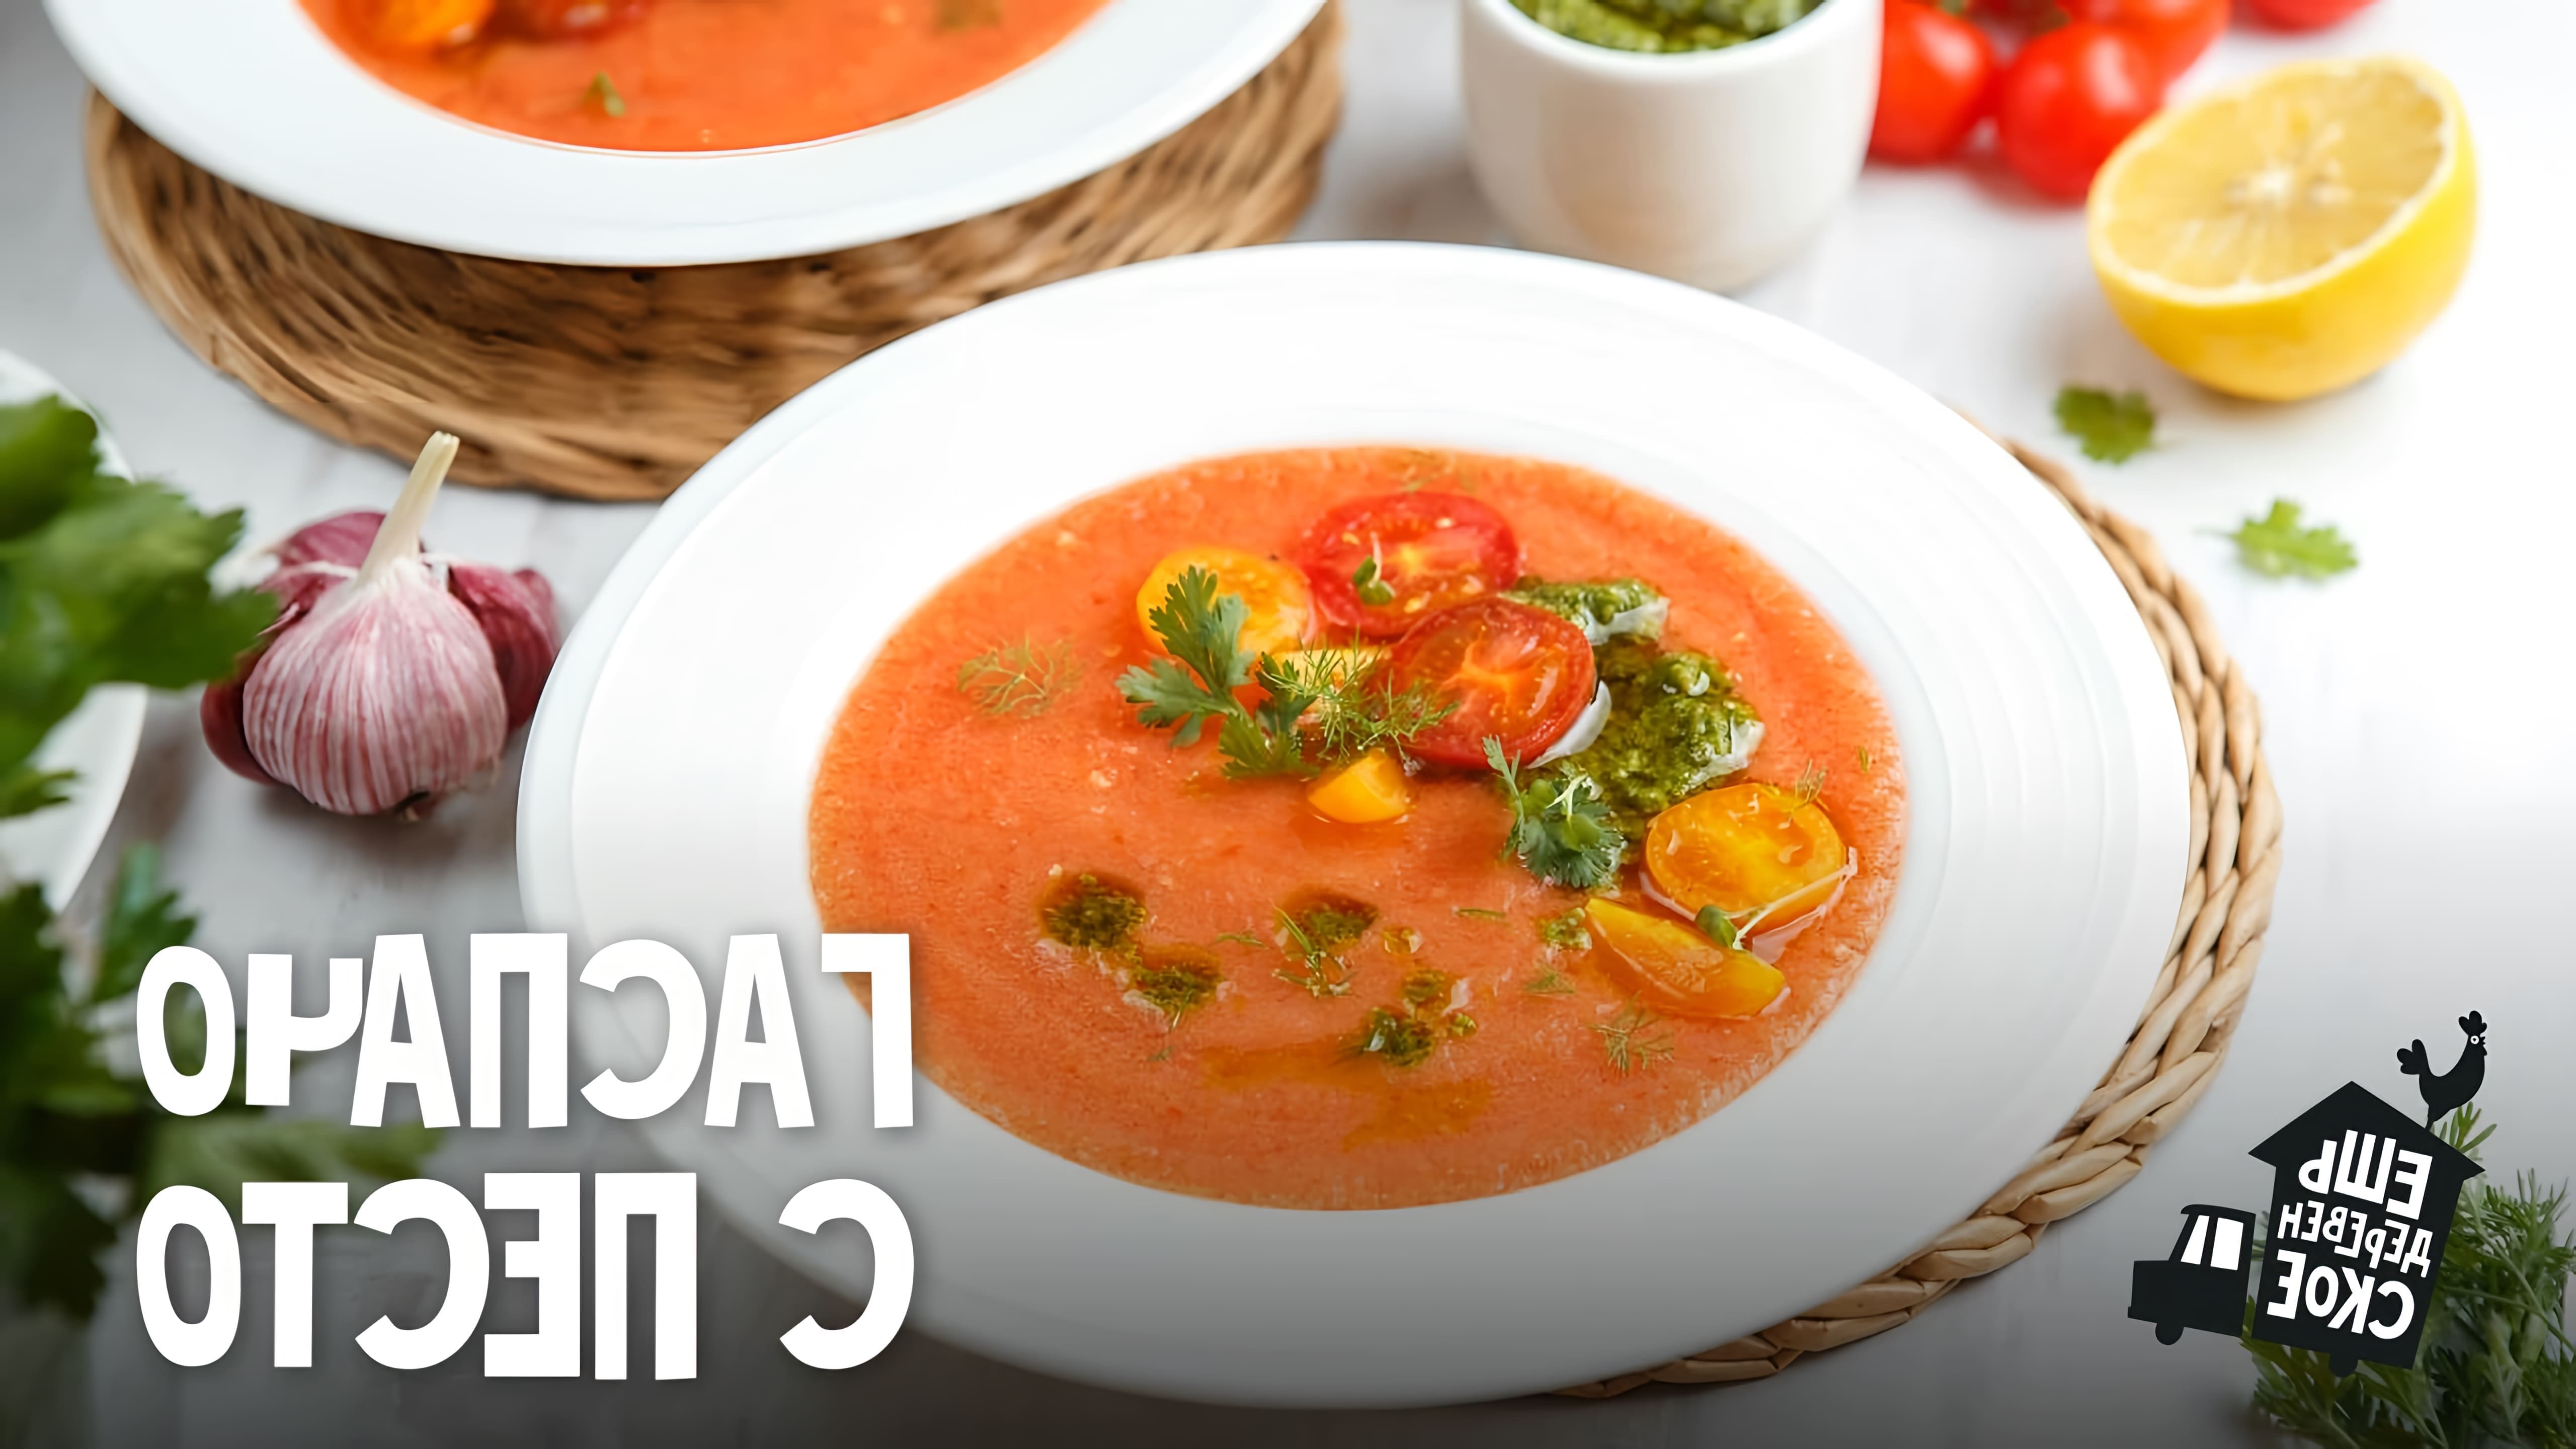 Рецепт супа гаспачо с песто - это вкусное и полезное блюдо, которое можно приготовить в домашних условиях